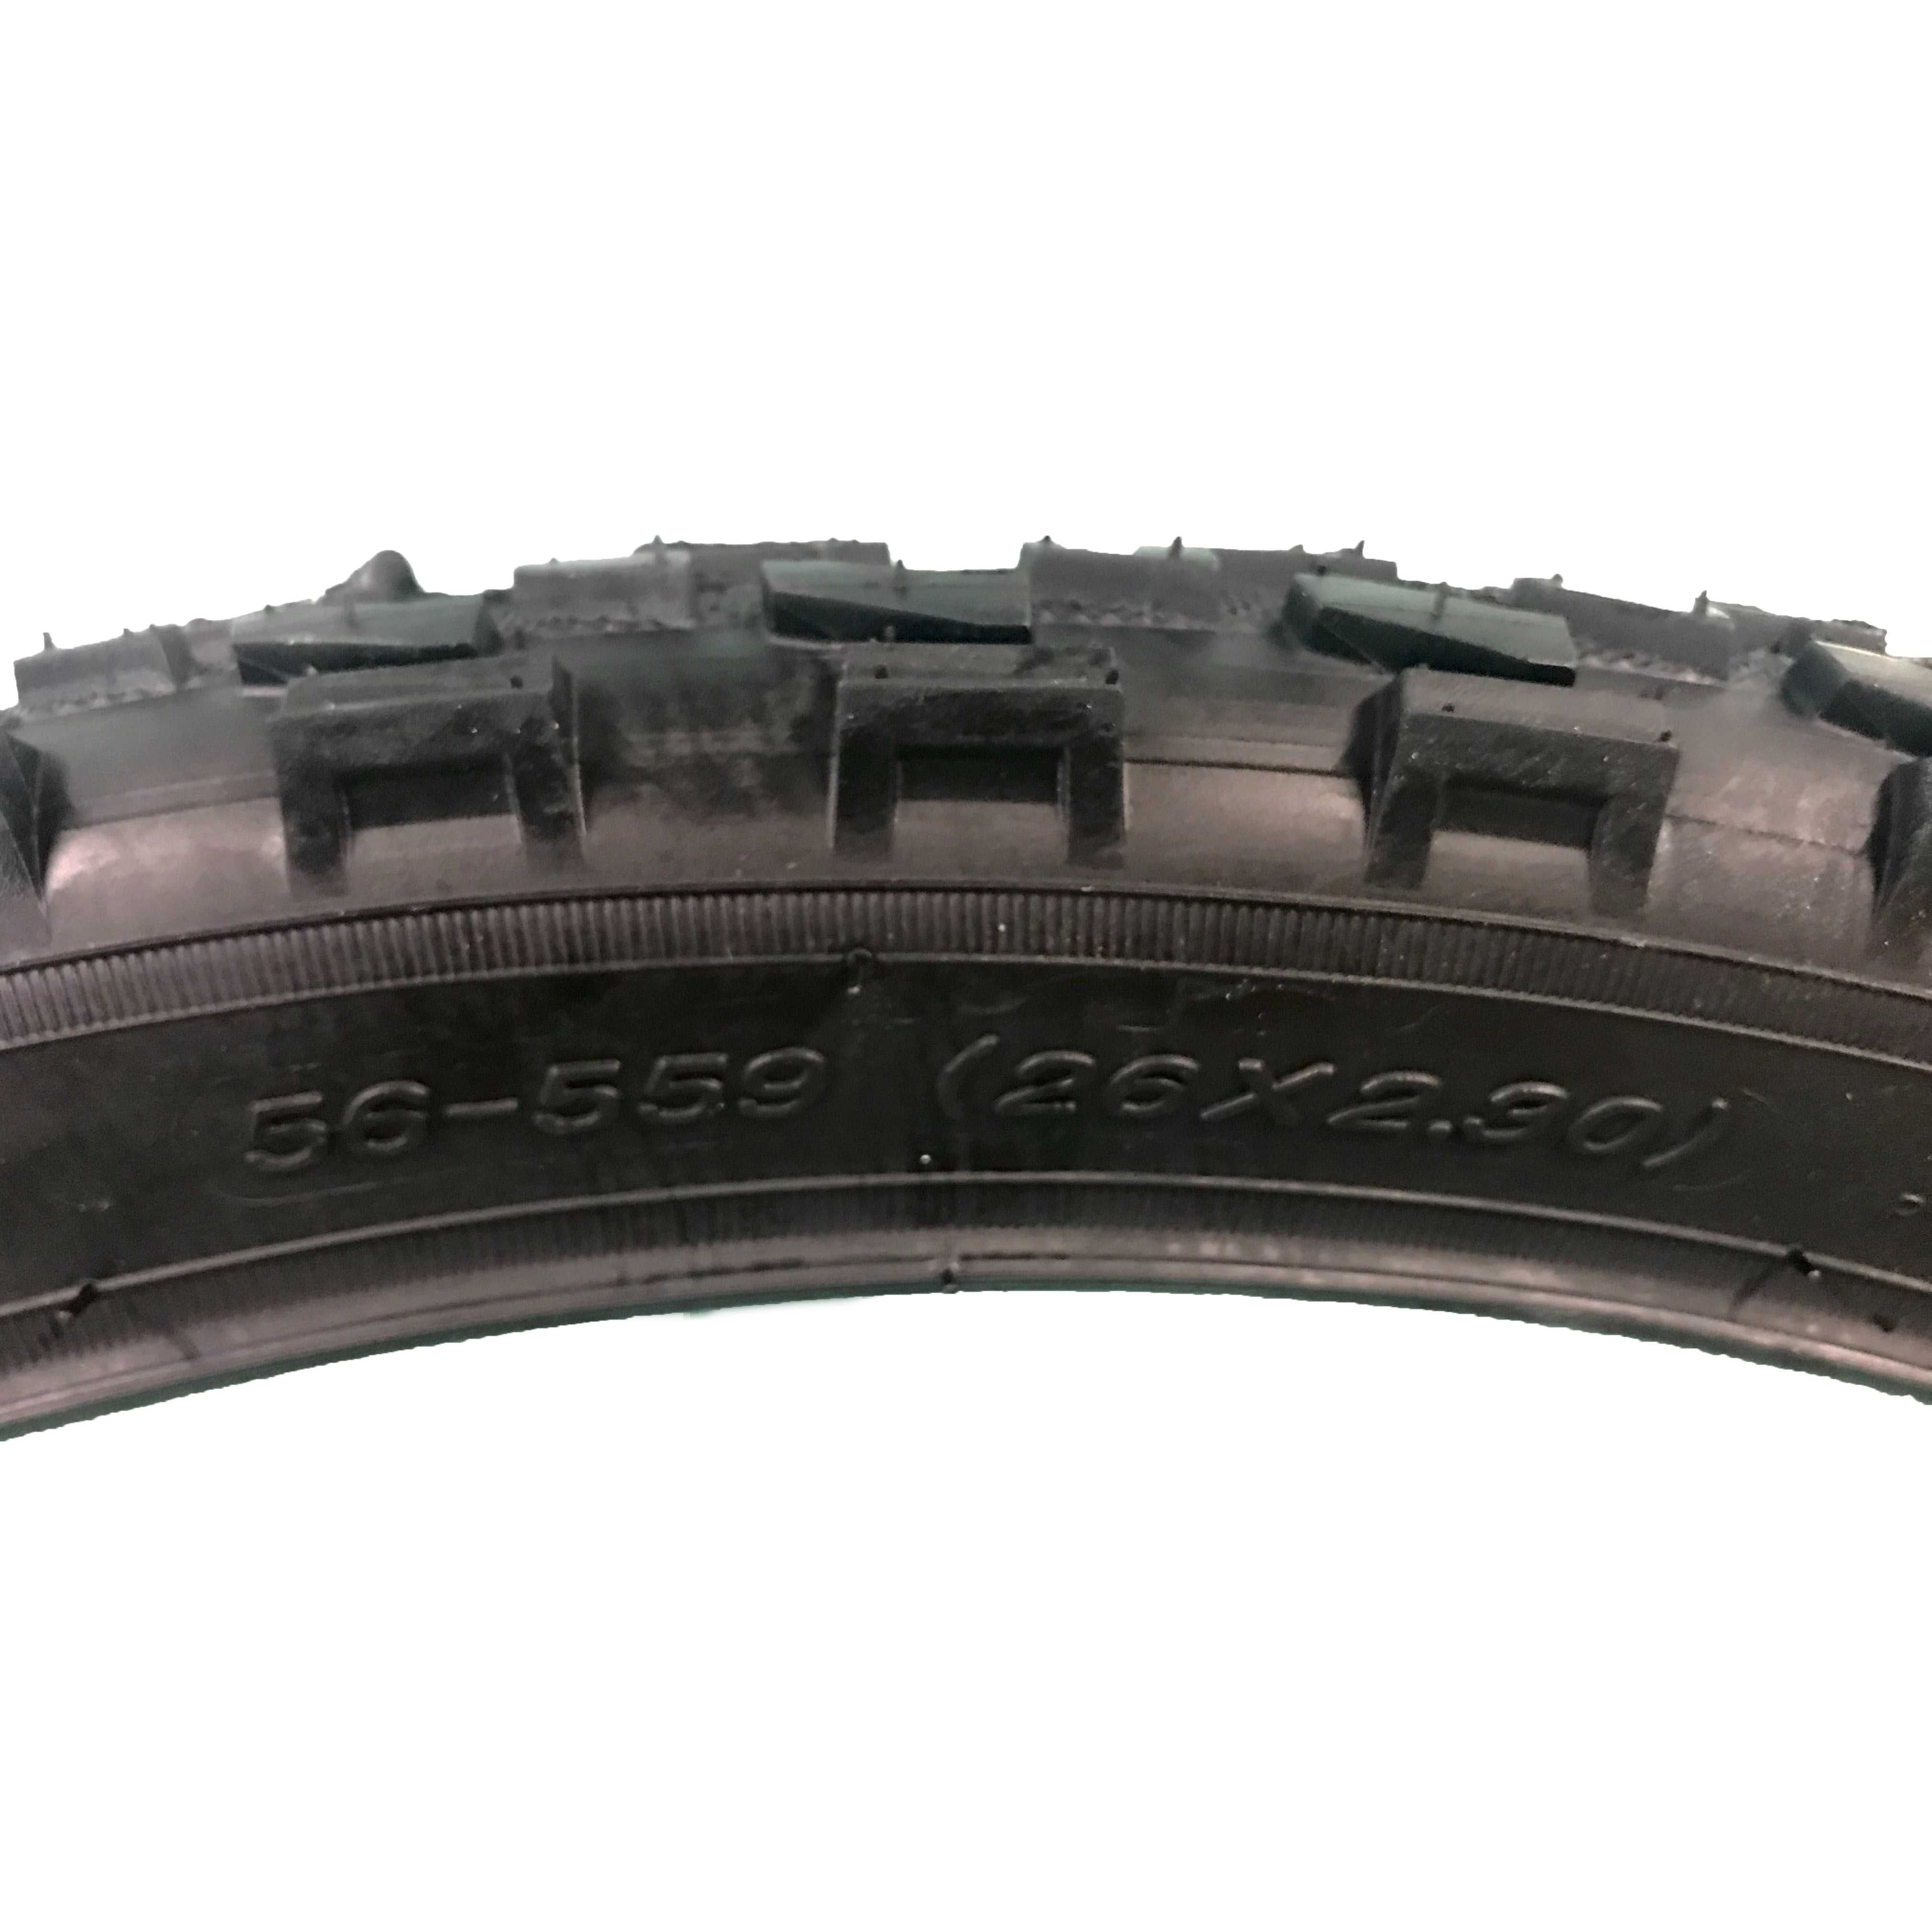 Външна гума за велосипед COMPASS (26 х 2.30) Защита от спукване - 4мм